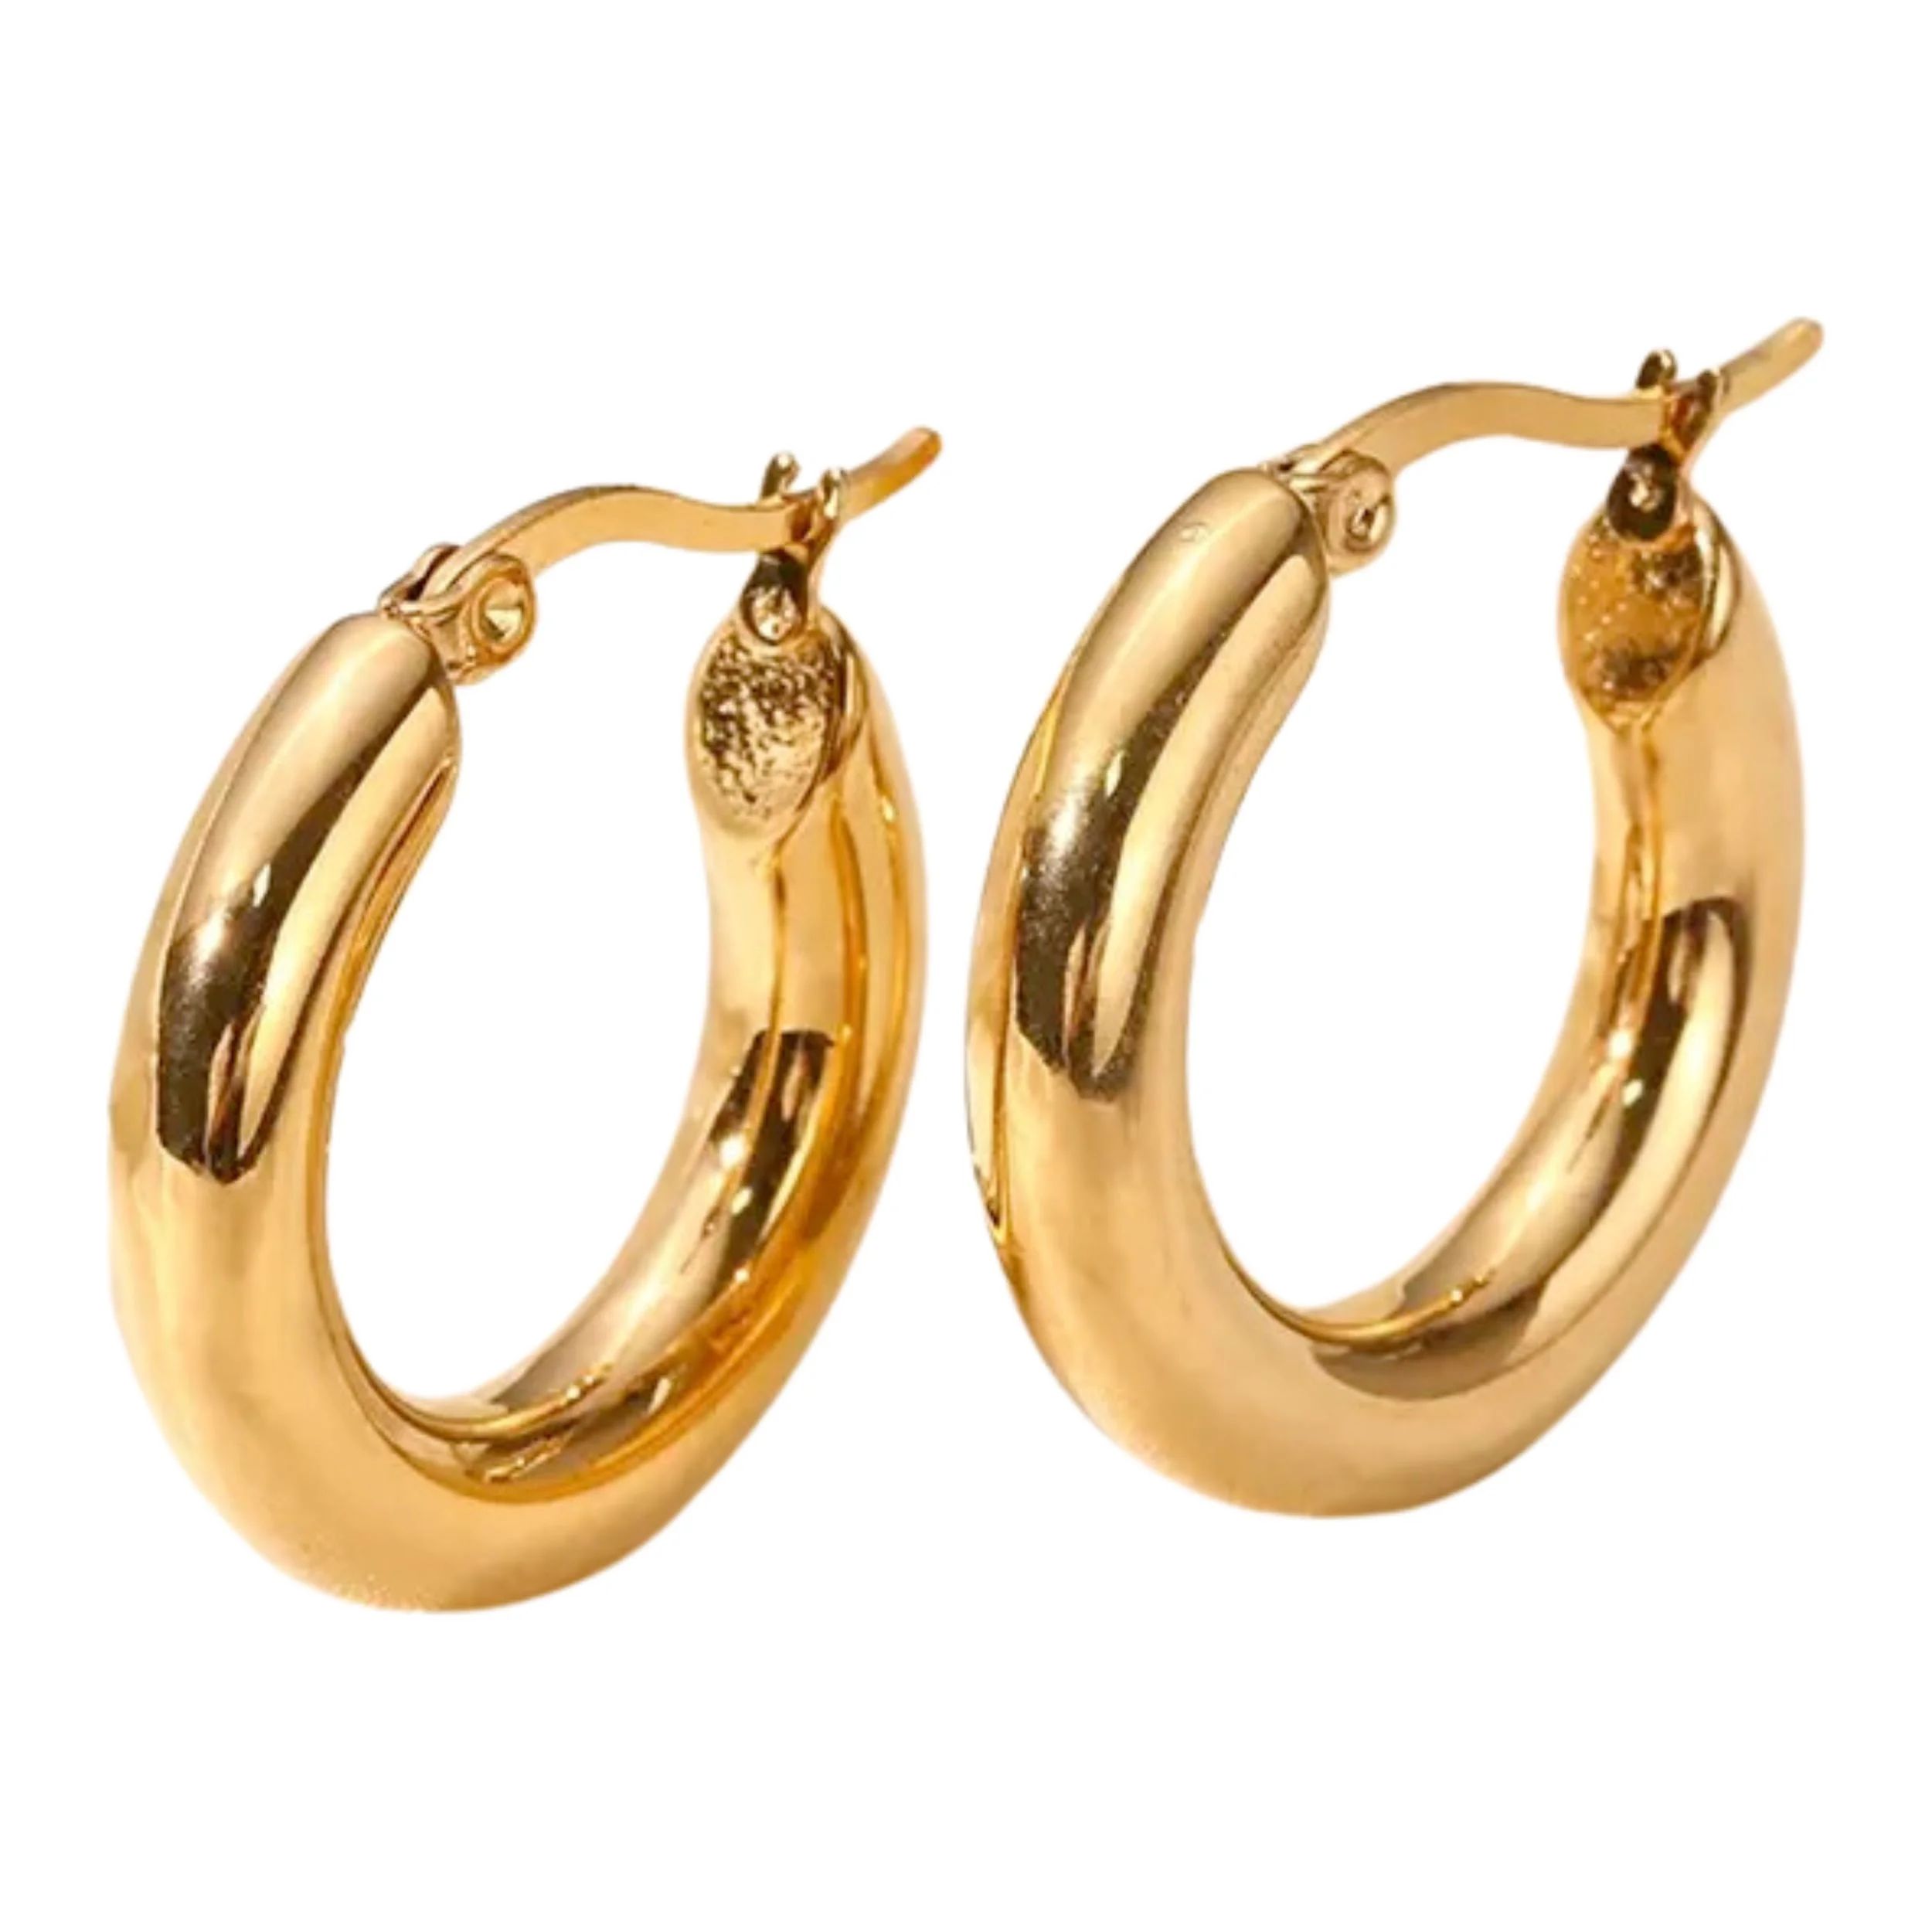 Lea Moda Gold Hoop Earrings, 18K Gold Plated Thick Loop Earrings for Women | Walmart (US)